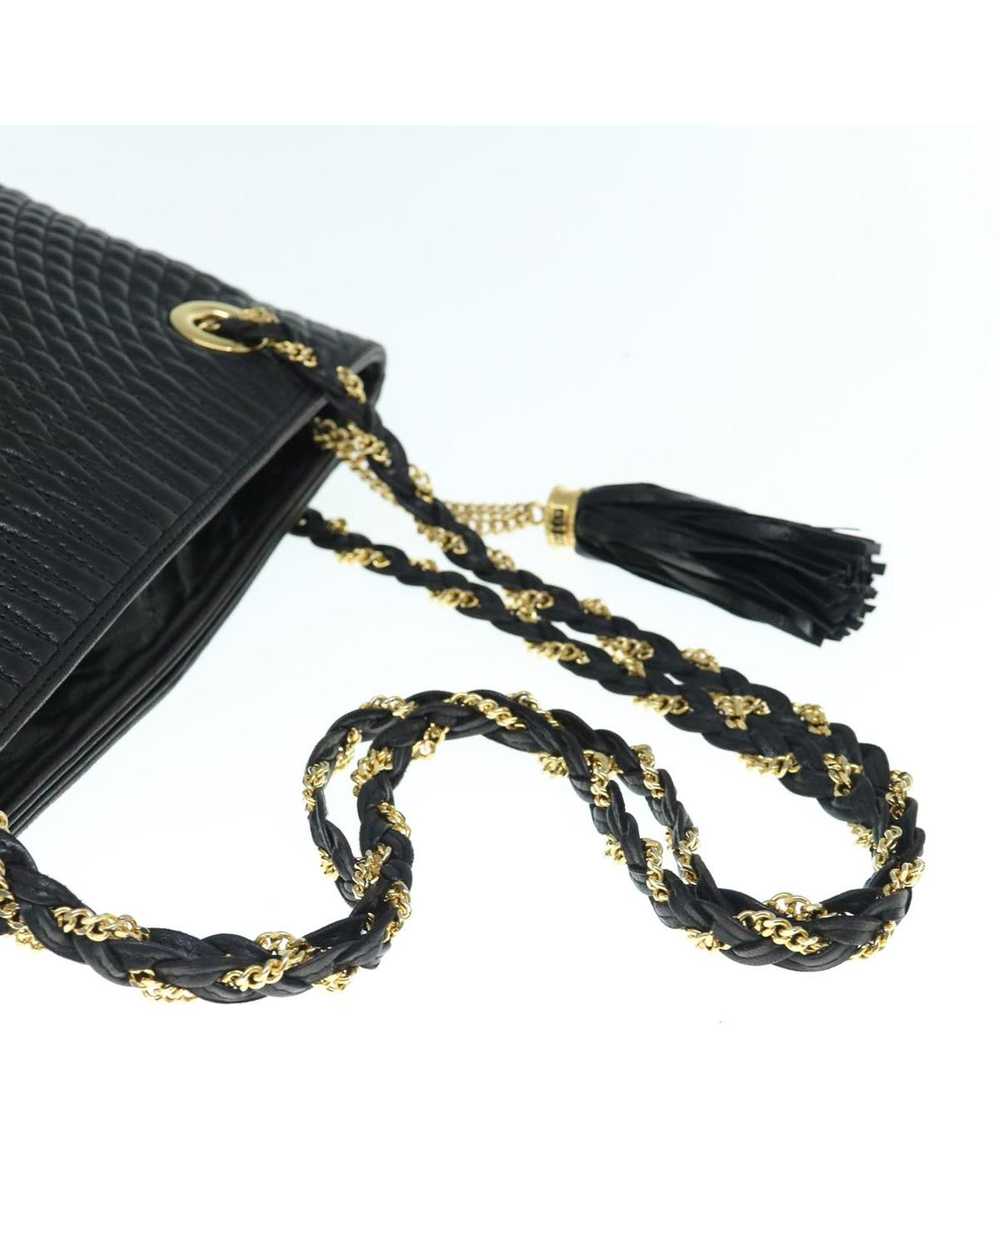 Bally Elegant Black Leather Shoulder Bag with Met… - image 7